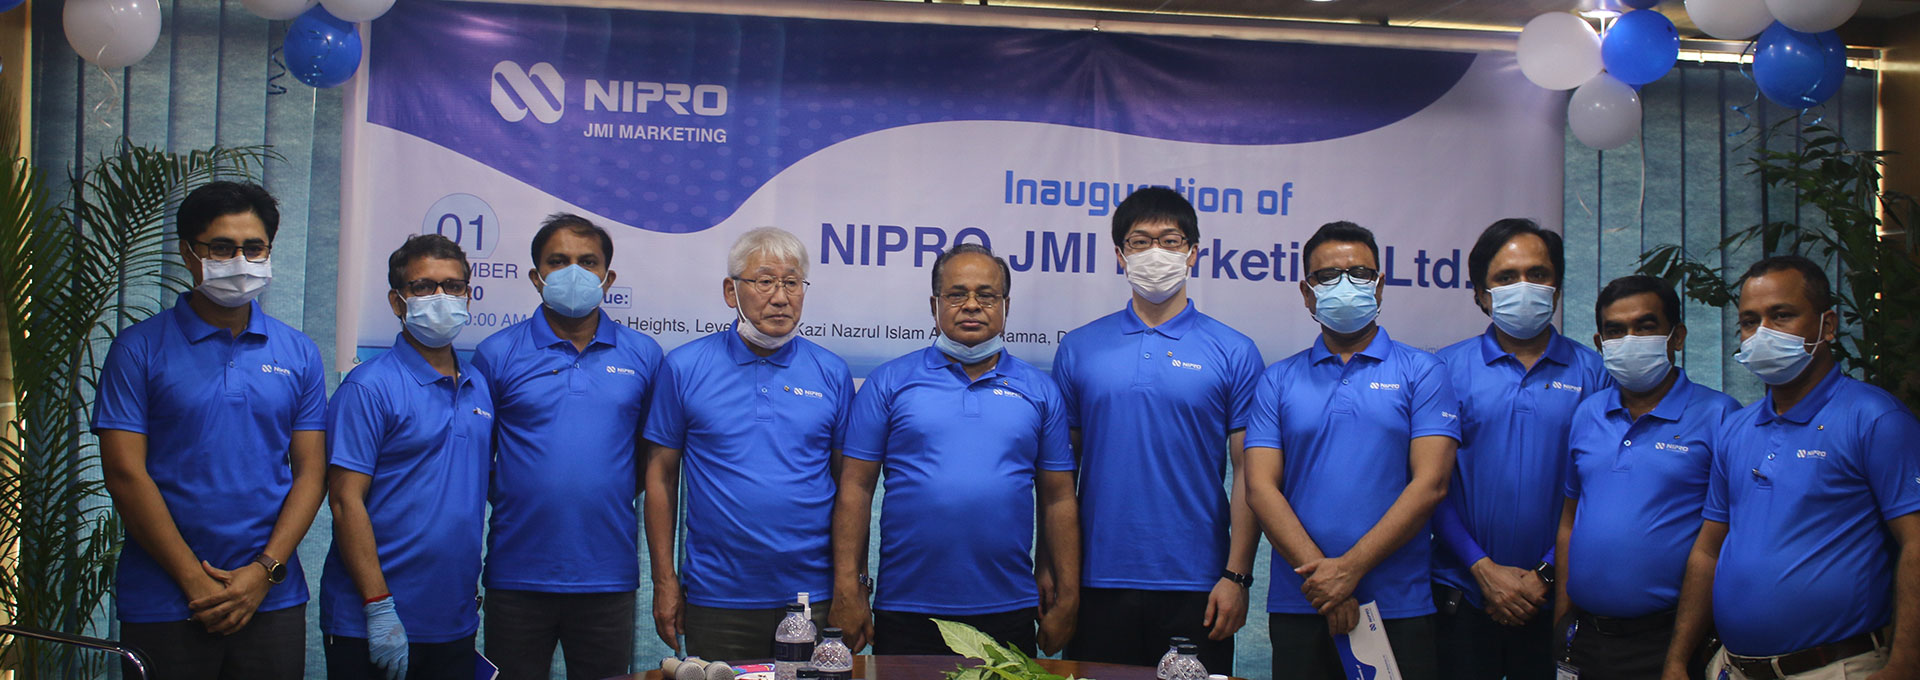 Nipro-JMI Marketing Ltd.